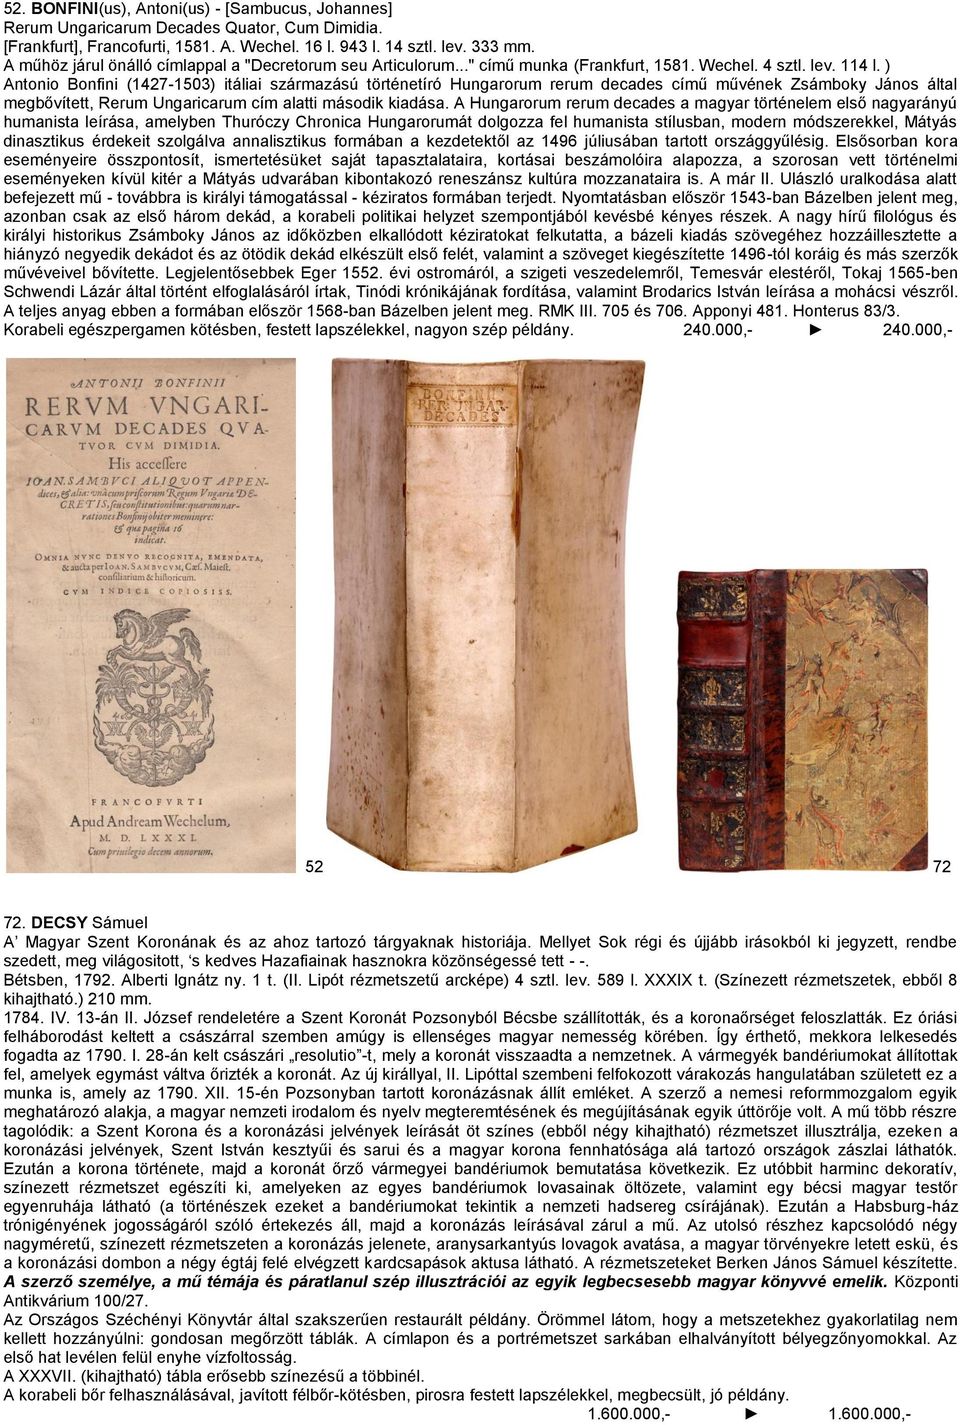 ) Antonio Bonfini (1427-1503) itáliai származású történetíró Hungarorum rerum decades című művének Zsámboky János által megbővített, Rerum Ungaricarum cím alatti második kiadása.